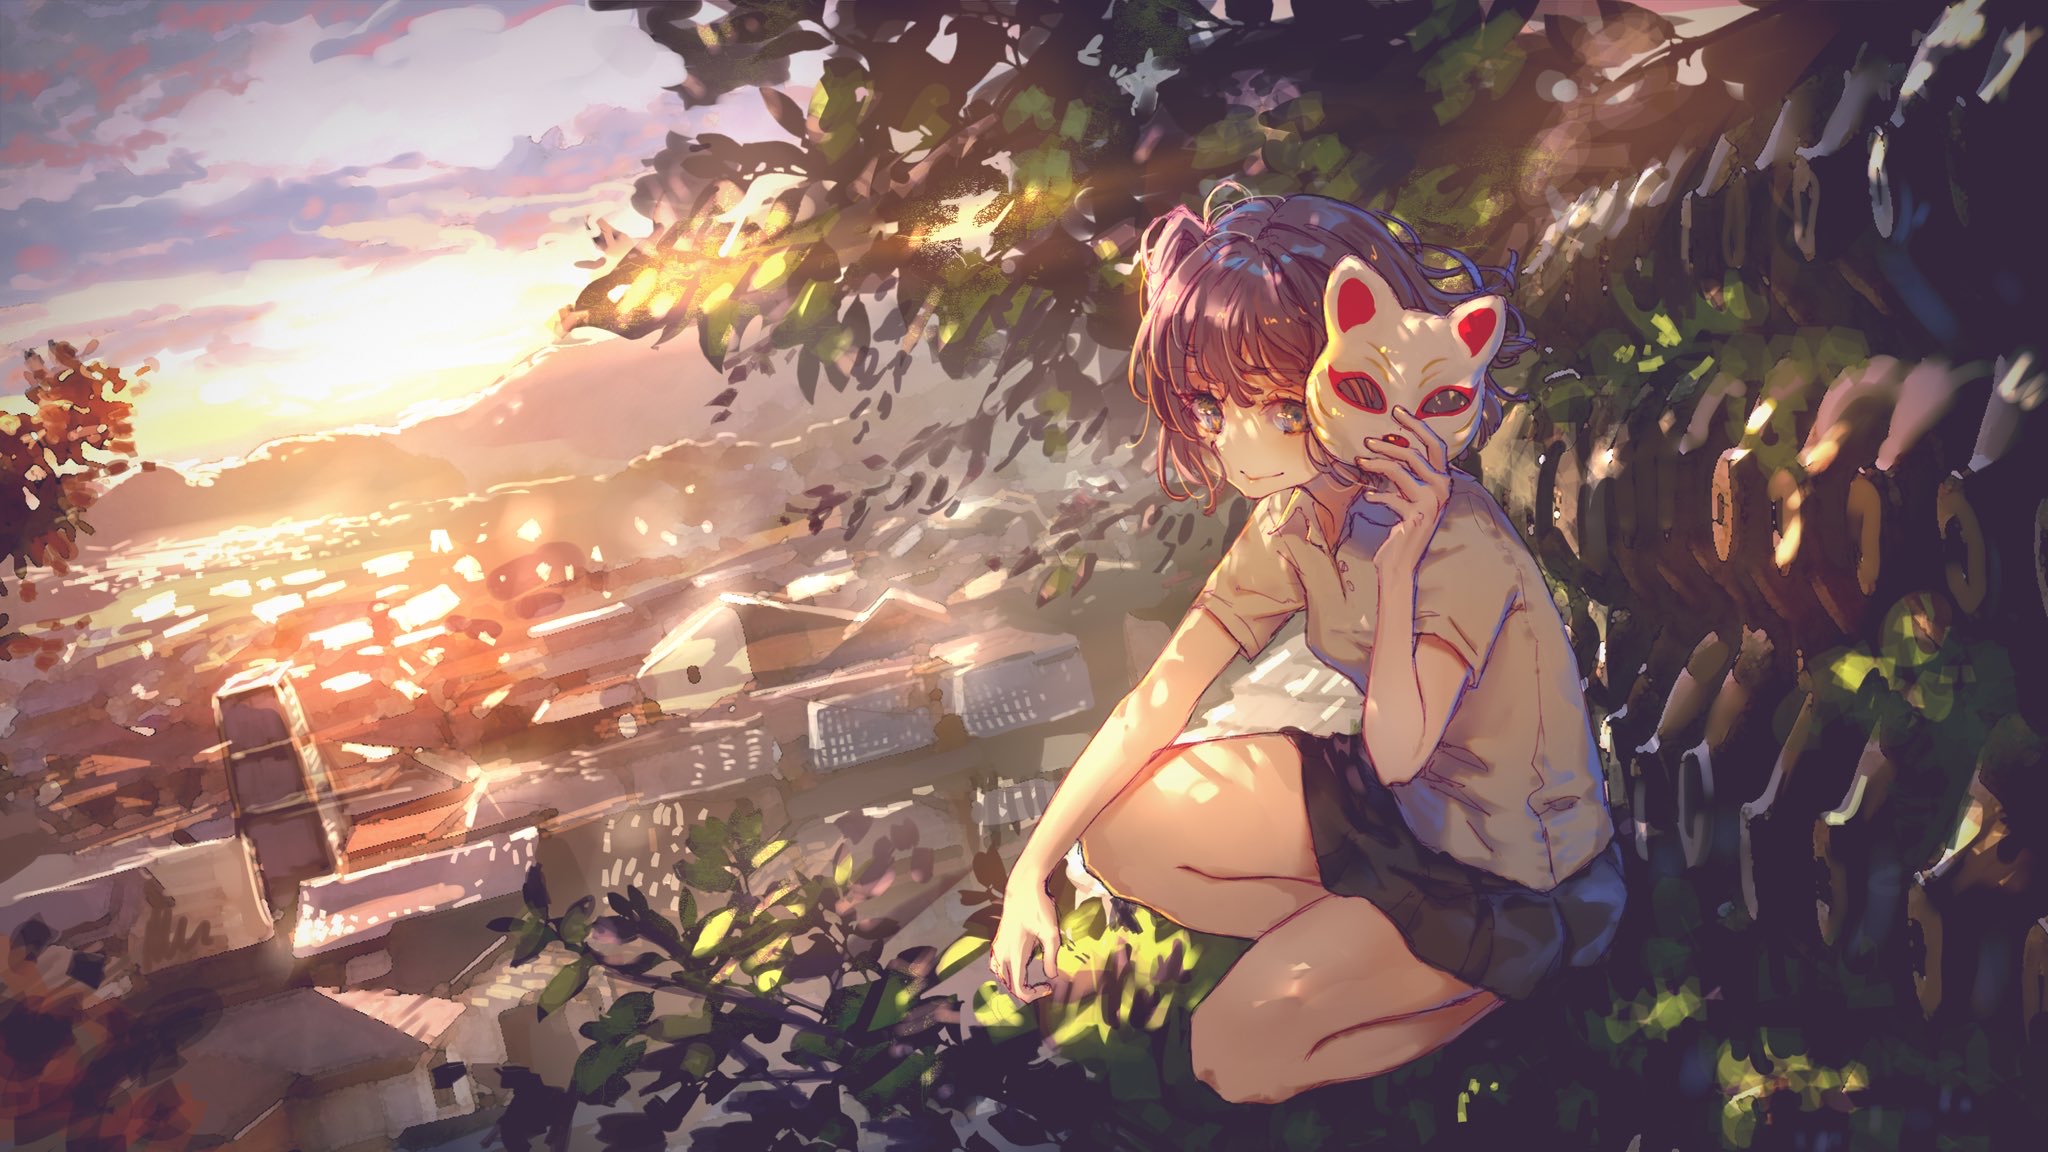 Anime 2048x1152 anime anime girls digital art artwork 2D Roki Virtual Youtuber mask cityscape sunset